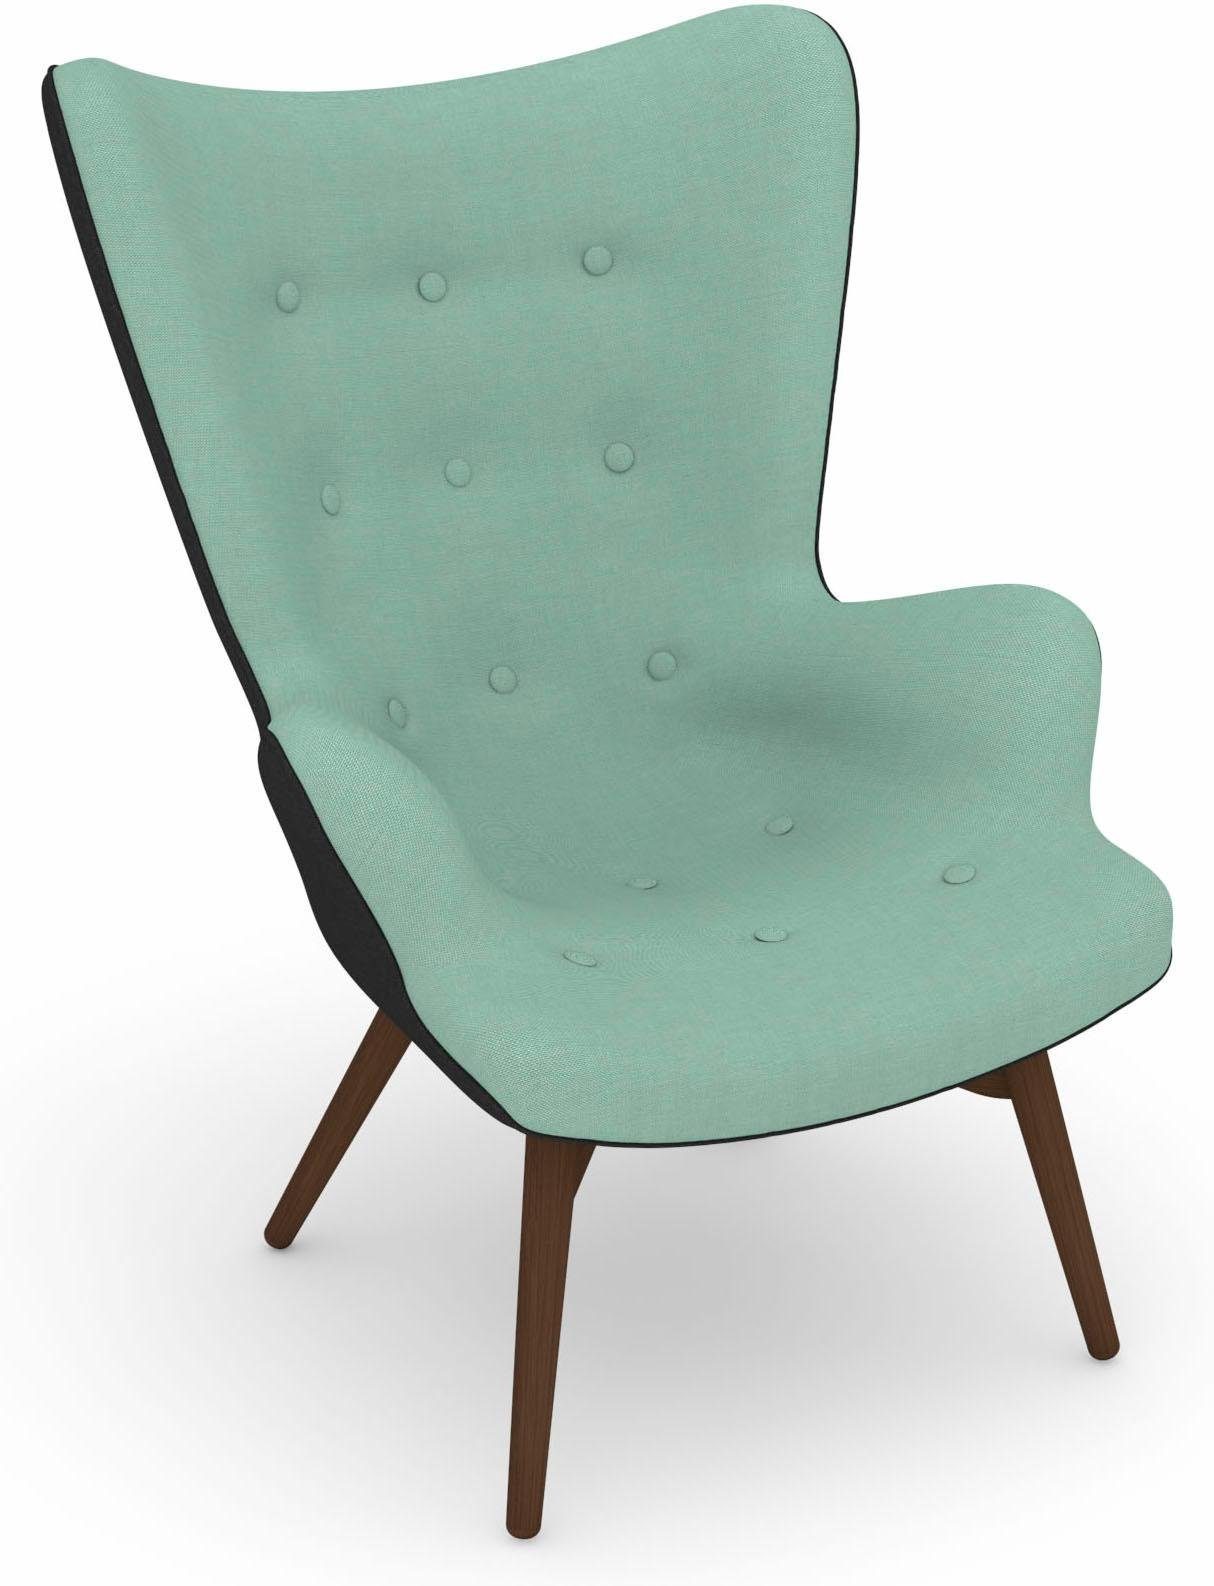 Max Winzer® Fauteuil Build-a-chair Arne in retro-look, om zelf te stylen, stoel met een hoge rugleuning